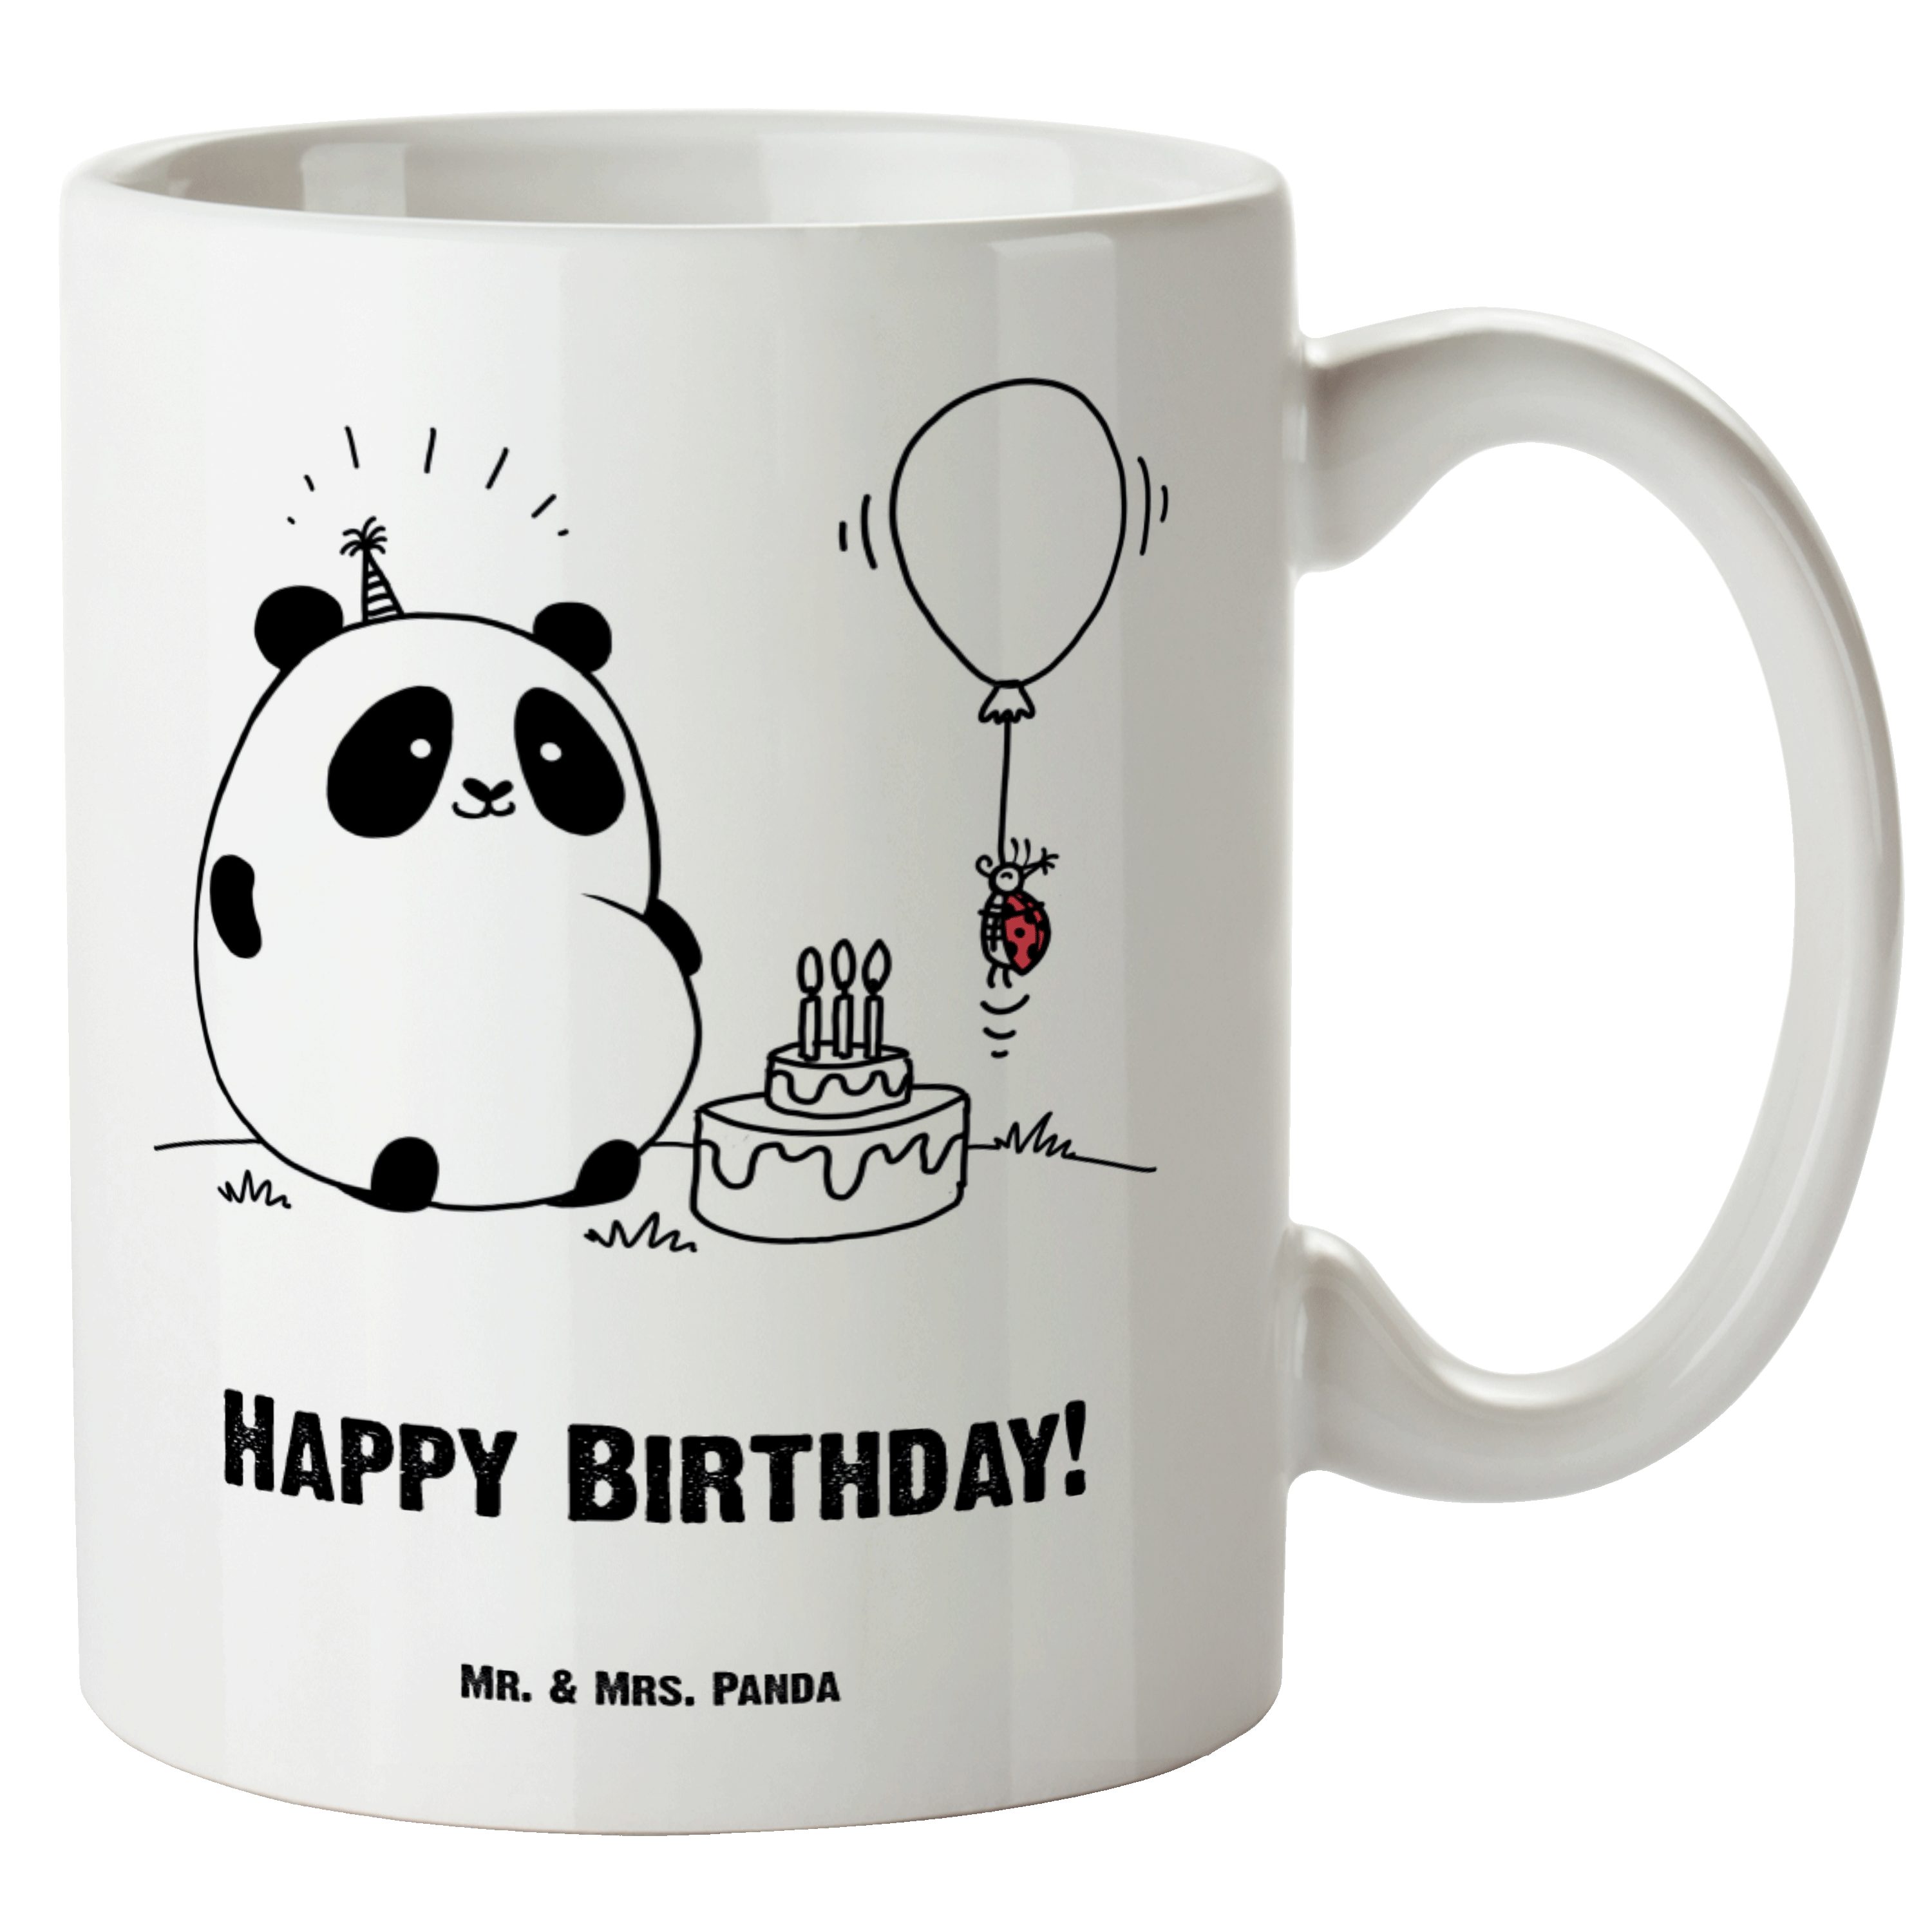 Mr. & Mrs. Panda Tasse Geschenk, spülmaschinenfest, Birthday Gro, & Happy Easy XL Keramik Weiß Tasse Peasy - 